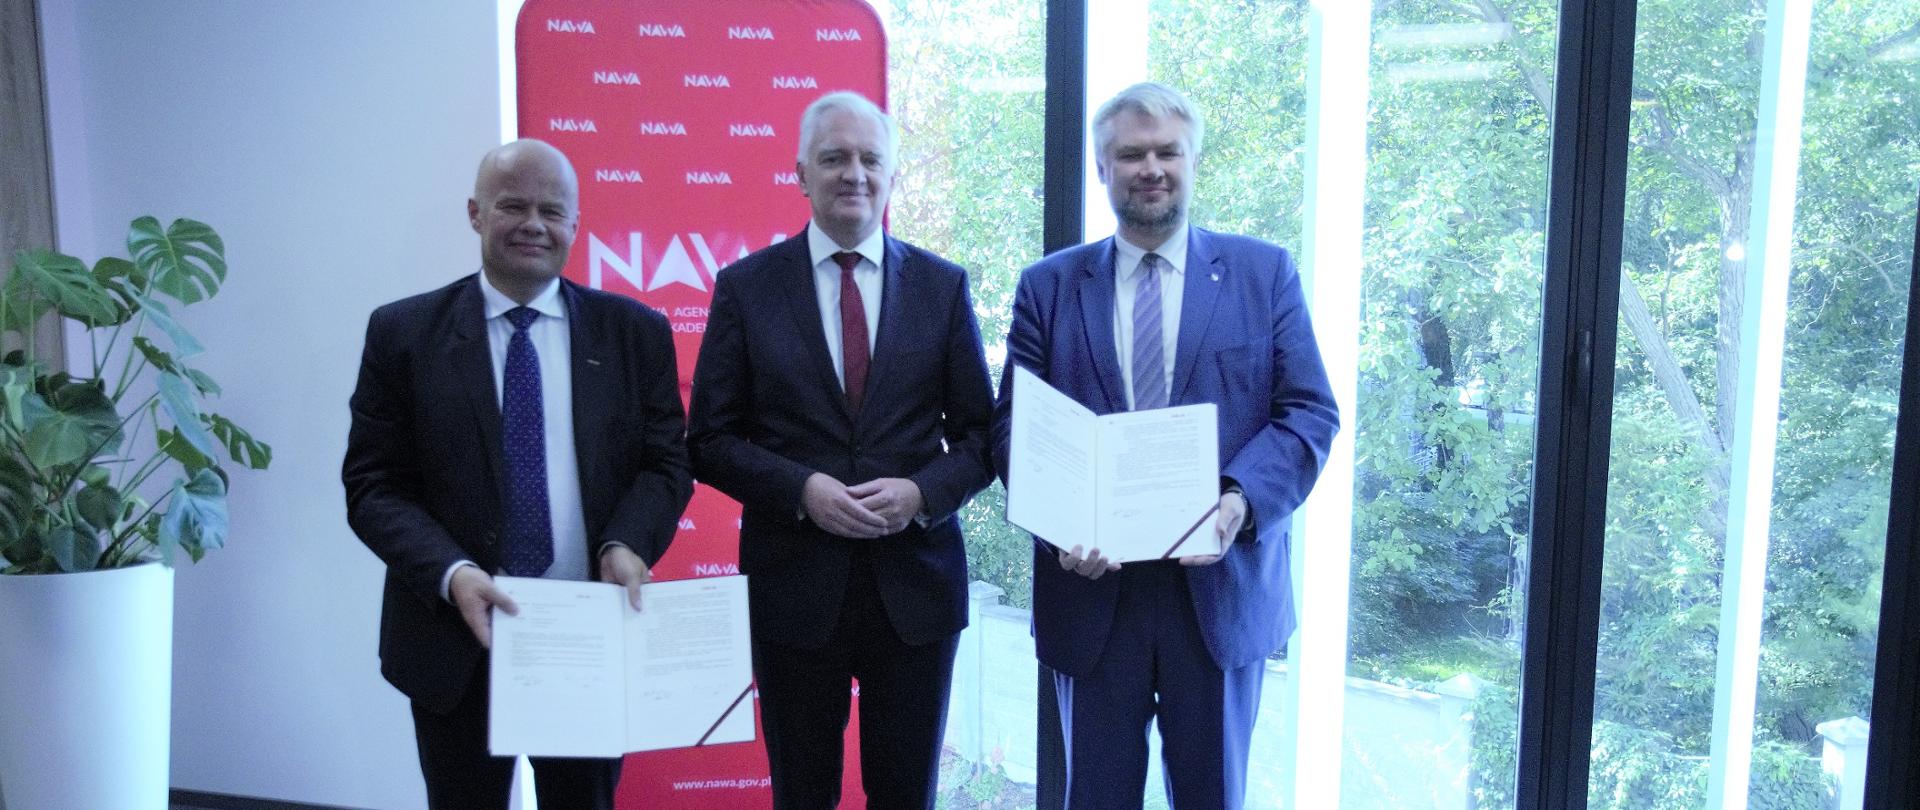 Podpisanie umowy NAWA NCN